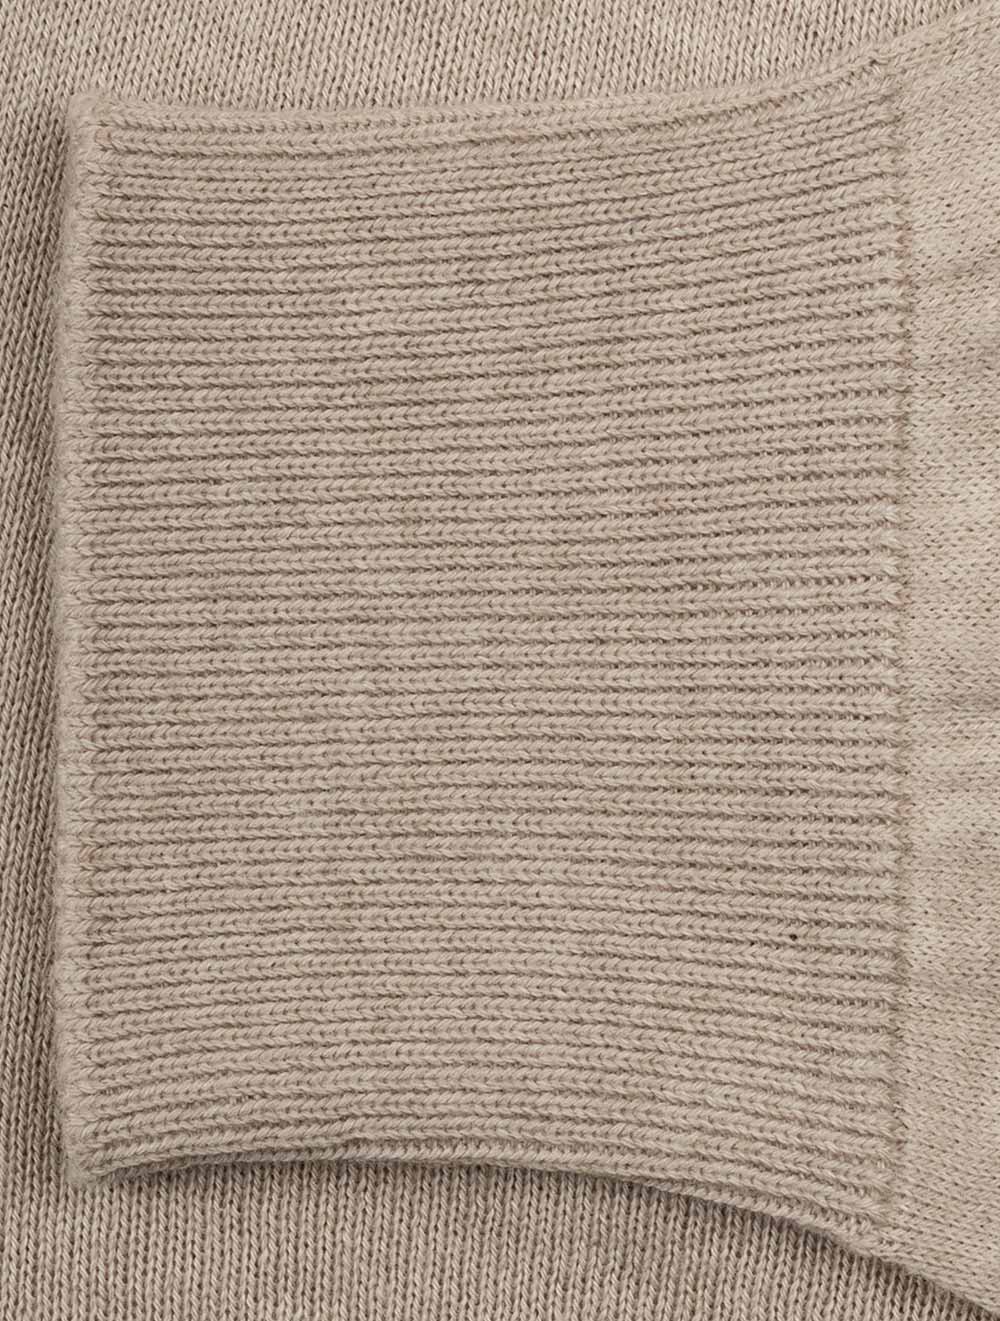 Knit Long Sleeve Polo Sand